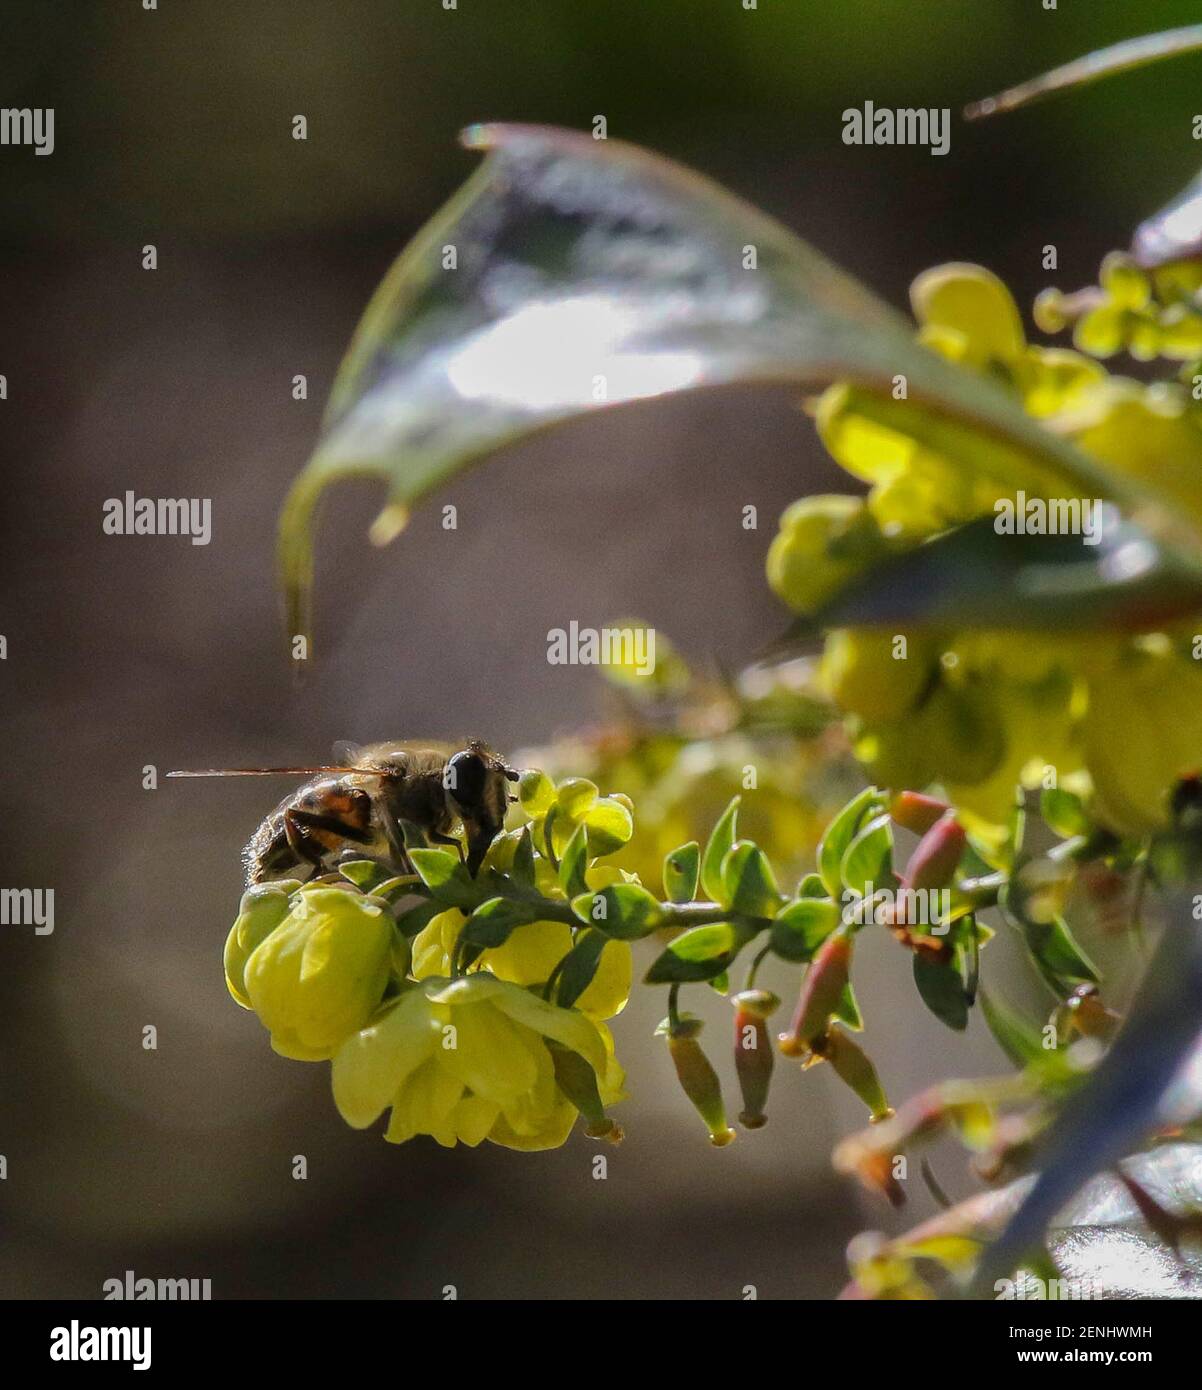 Magheralin, County Armagh, Nordirland. 26. Februar 2021. UK Wetter - ein langer heller sonniger Tag, aber kalt aus der Sonne. Eine einsame Biene auf einem winterblühenden gelben Strauch, Mahonia. Kredit: CAZIMB/Alamy Live Nachrichten. Stockfoto